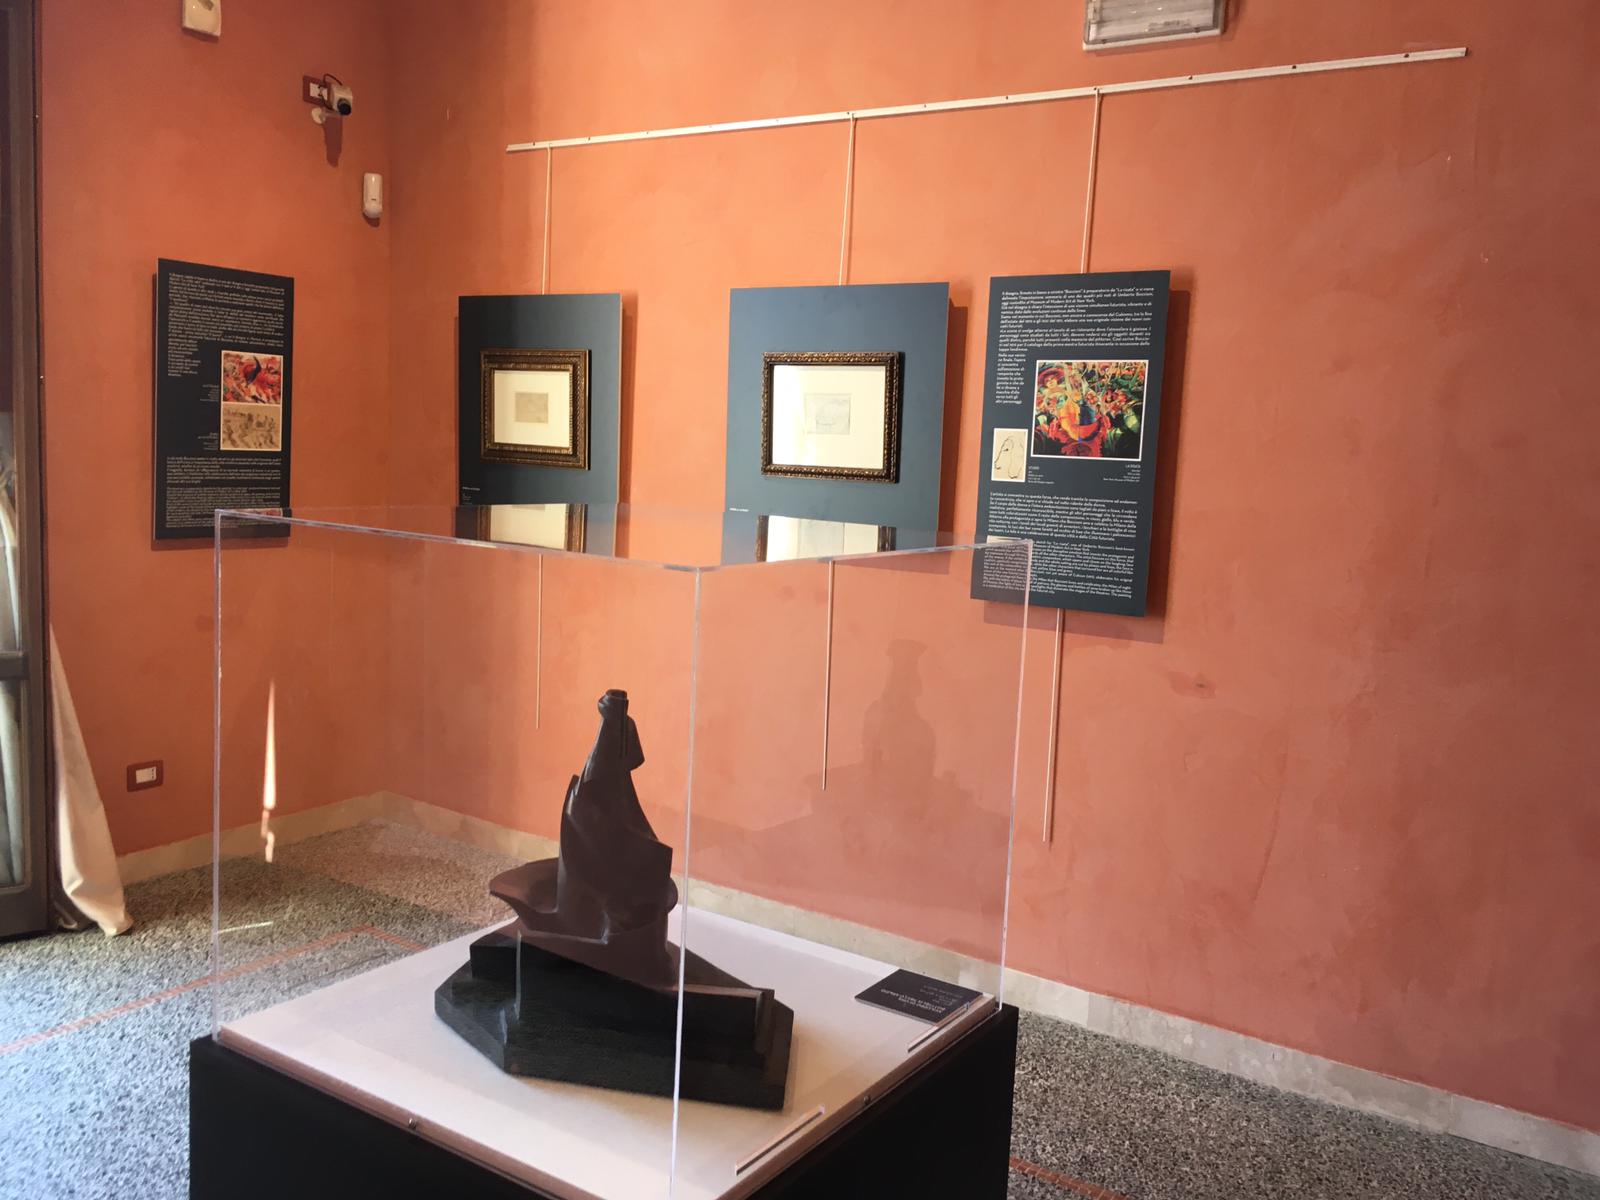 Reggio Calabria, dal MarRc alla Pinacoteca le opere del genio futurista Boccioni